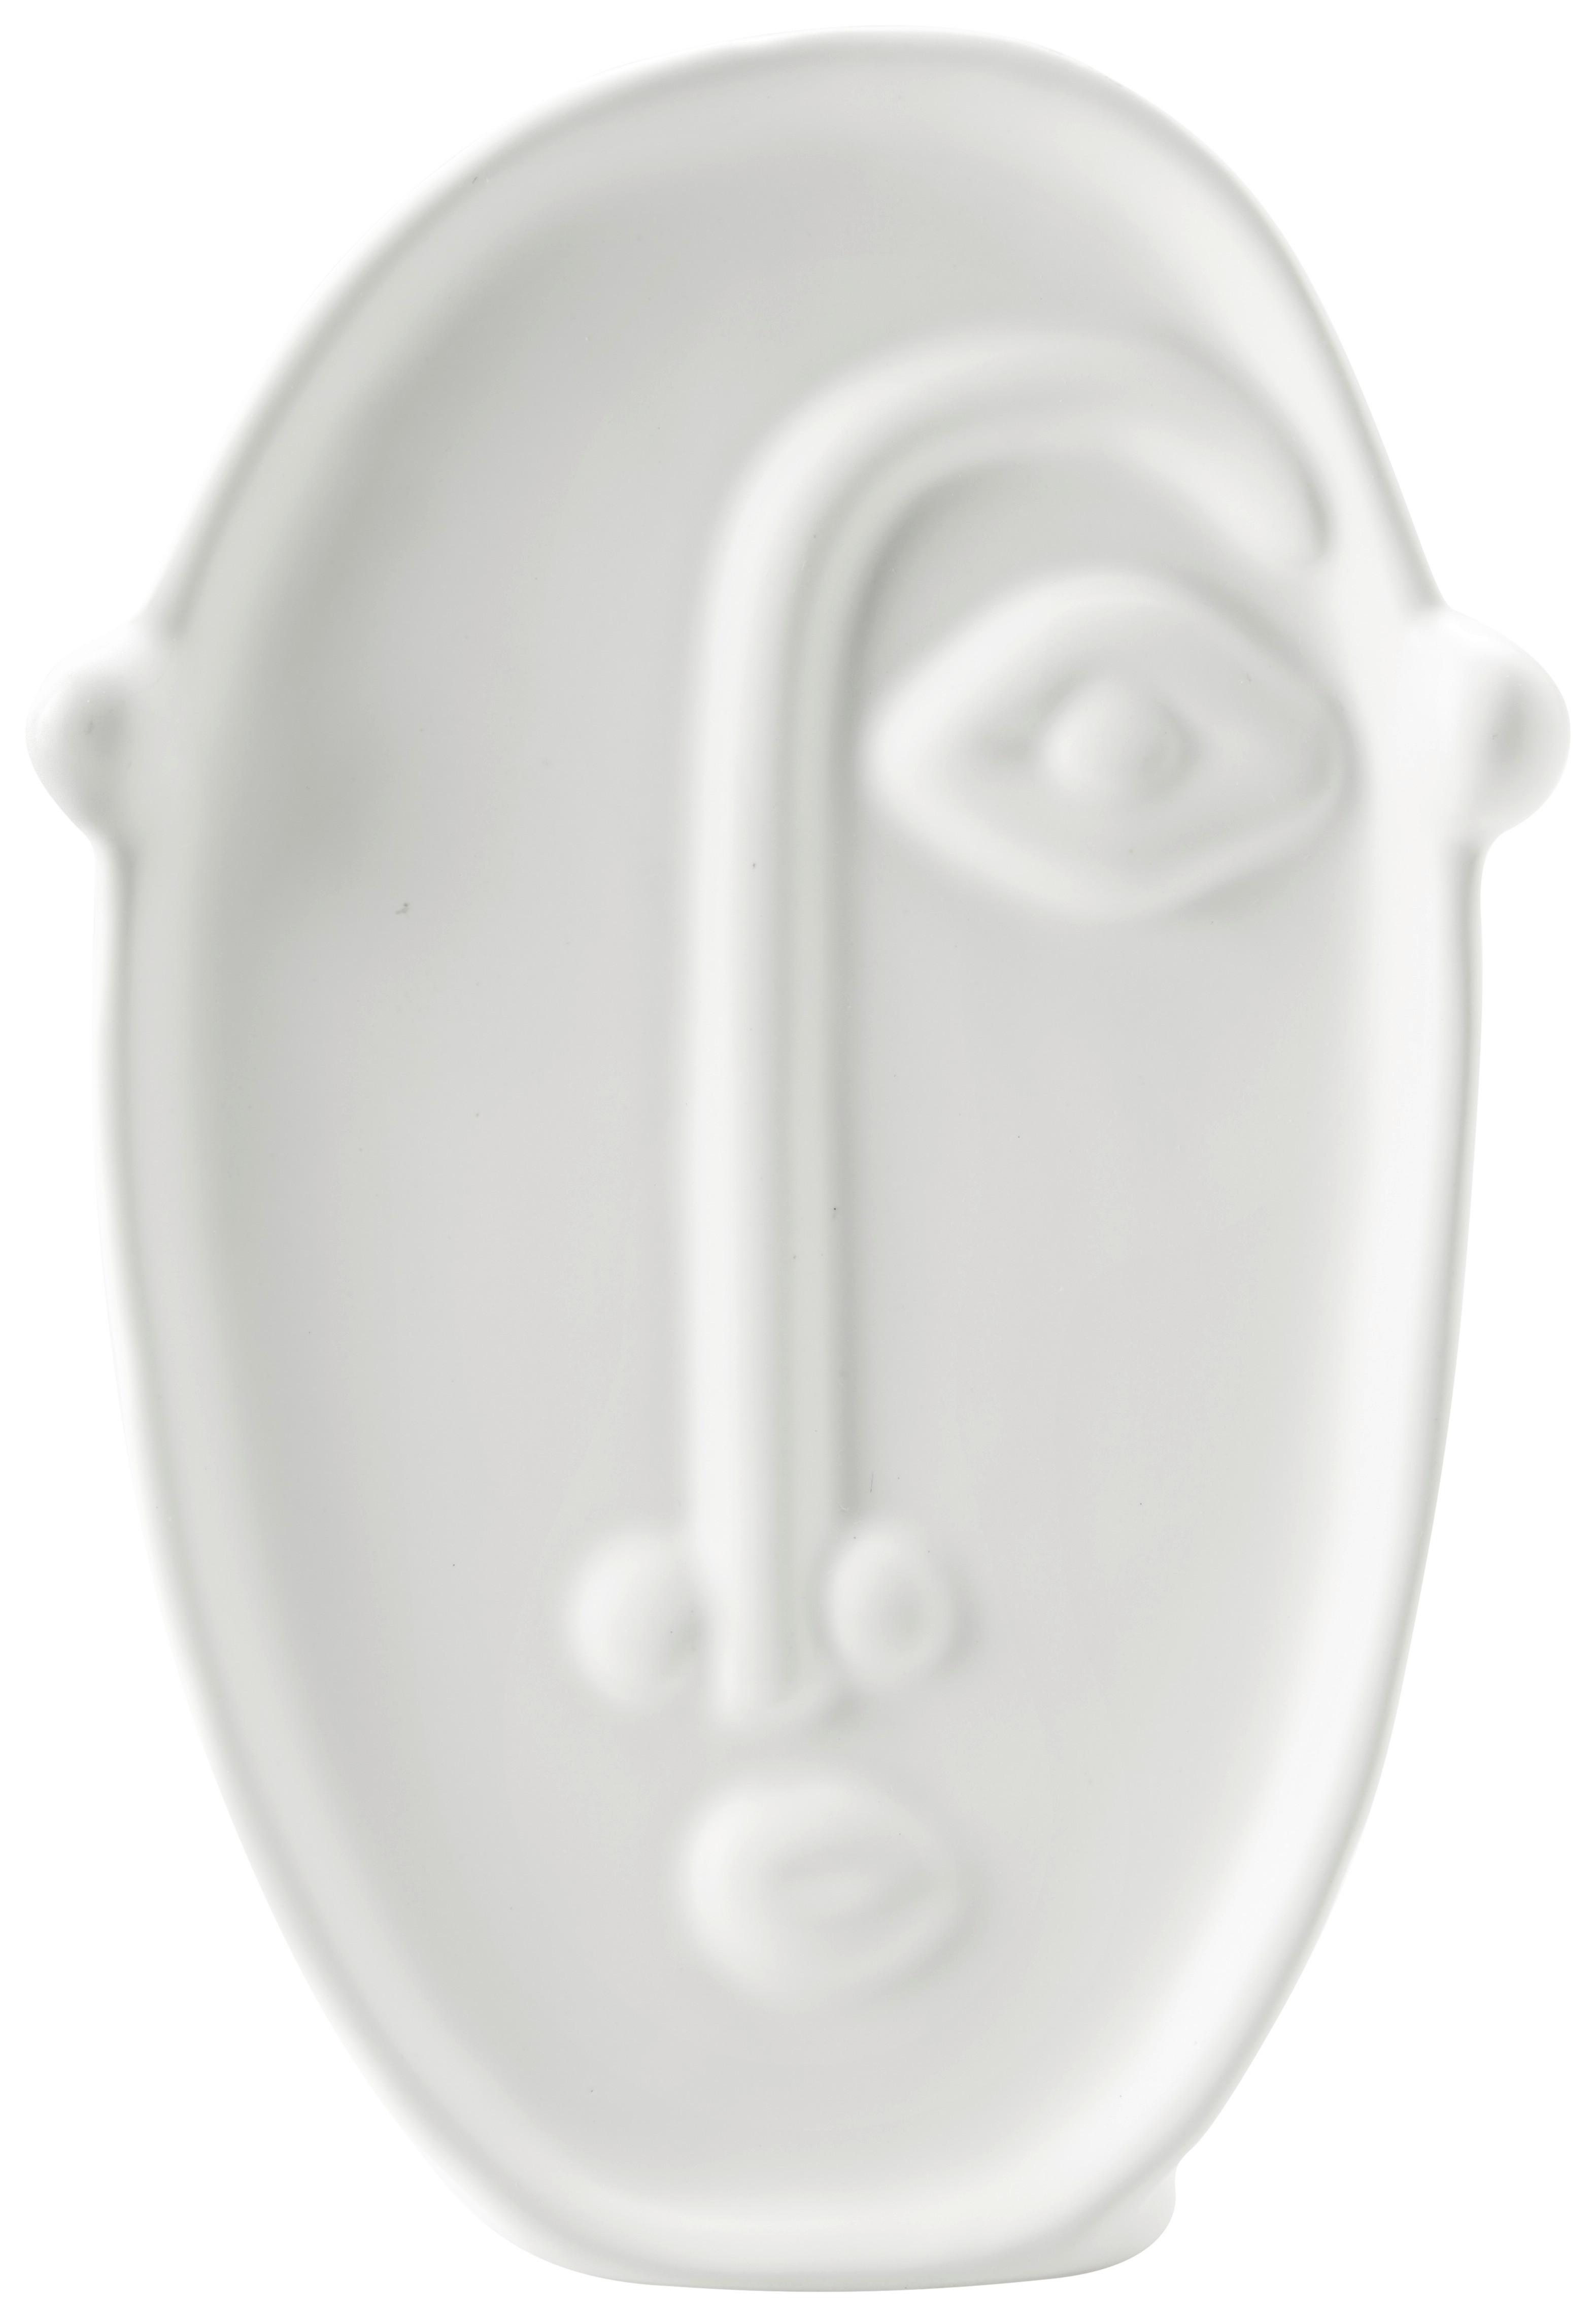 Váza Joona - bílá, keramika (12,3/5,4/19cm) - Modern Living